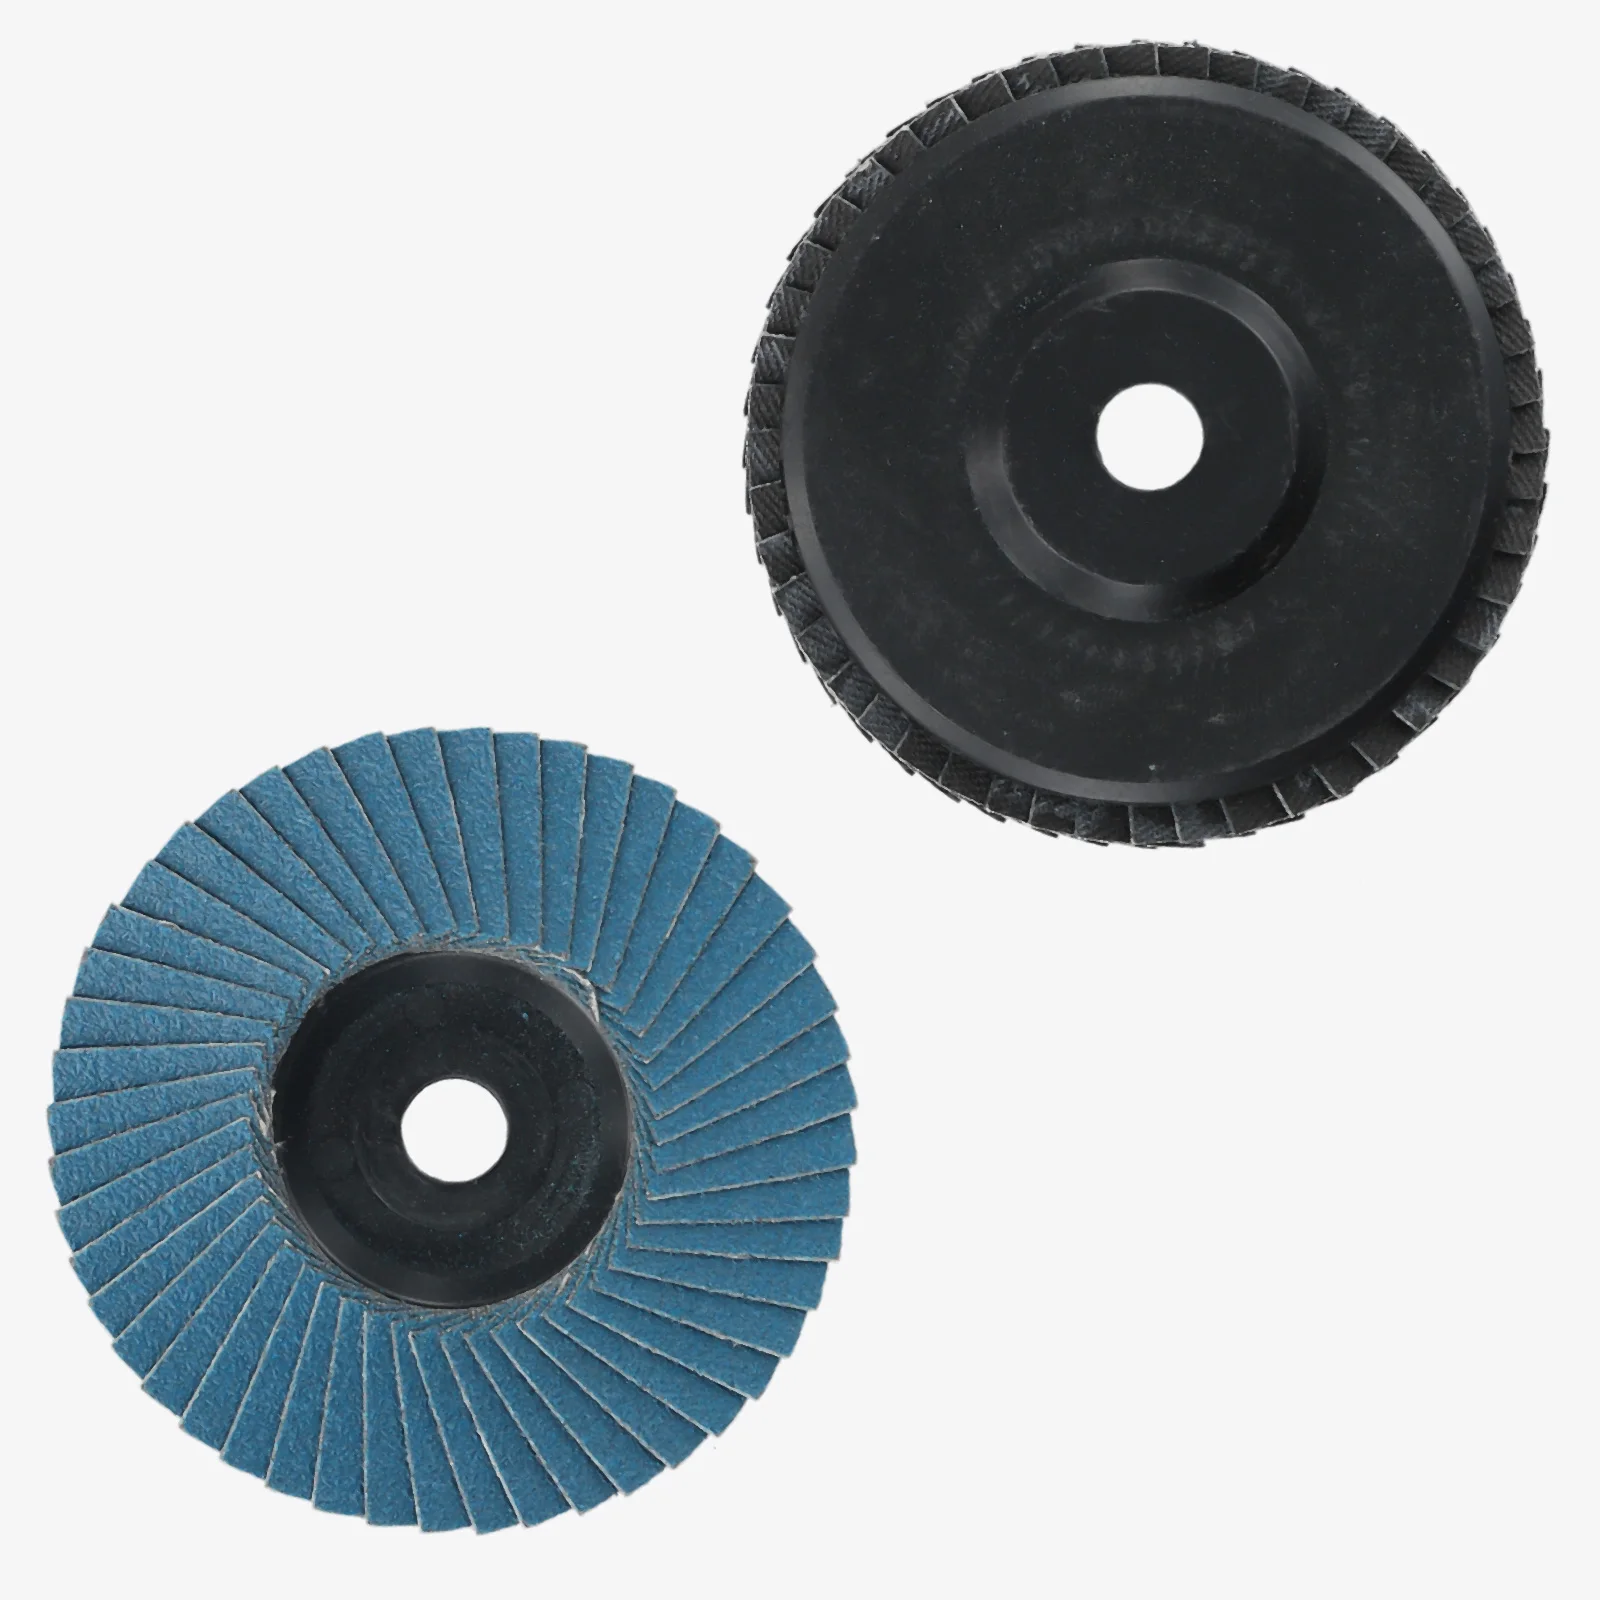 

Power Tool Grinding Wheel Flap Discs Grinding Wheels 120# 3 Inch 75mm Angle Grinder Hard-wearing Metal Grind Sanding Discs